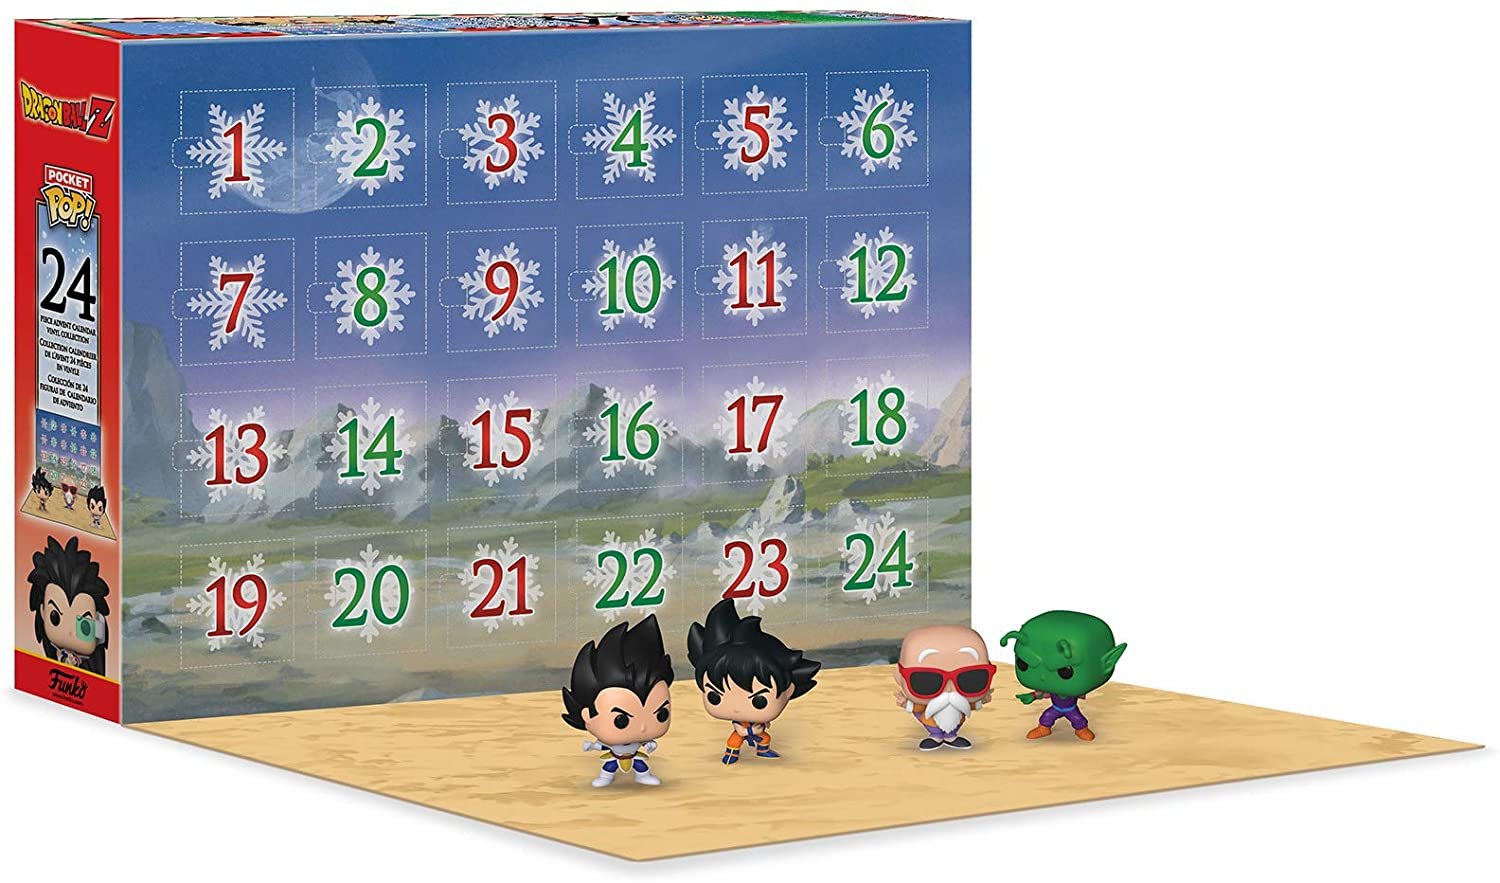 Funko Advent Calendar Dragon Ball Z 2020, Multicolor 889698496605 eBay